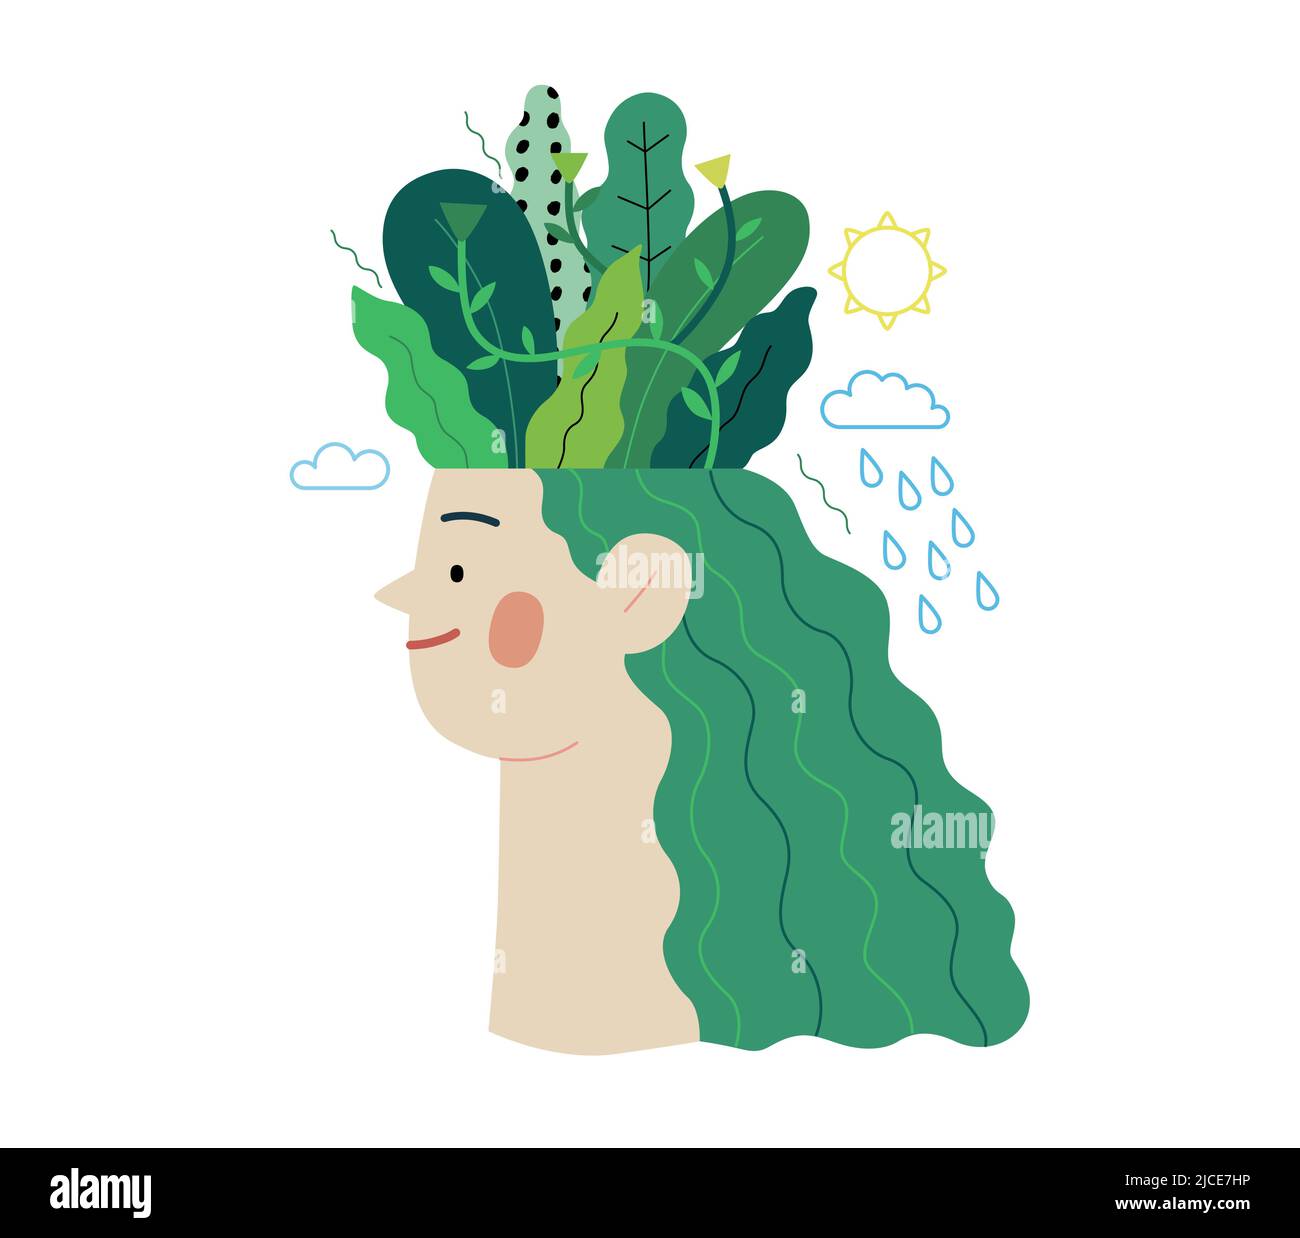 Écologie - pensez vert - moderne vecteur plat illustration du concept d'une tête de jeune femme plantée d'arbres et de fleurs, une métaphore de la pensée durable Illustration de Vecteur